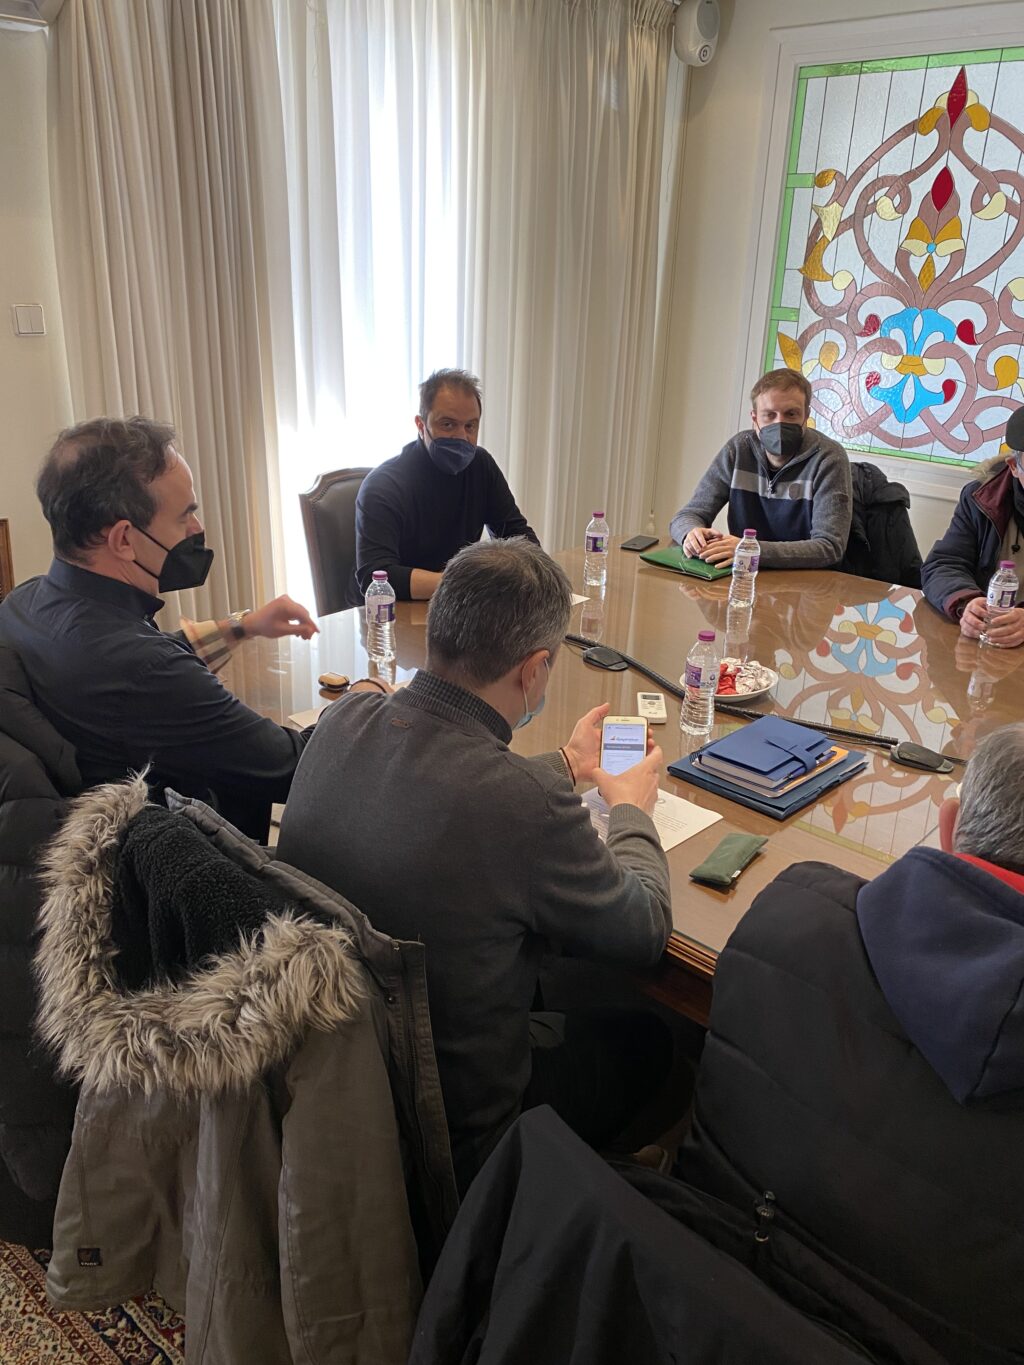 Συνάντηση εργασίας του προέδρου και μελών της διοίκησης του Επιμελητηρίου Κοζάνης, με τον πρόεδρο και τα μέλη της διοίκησης του Εμπορικού Συλλόγου Κοζάνης